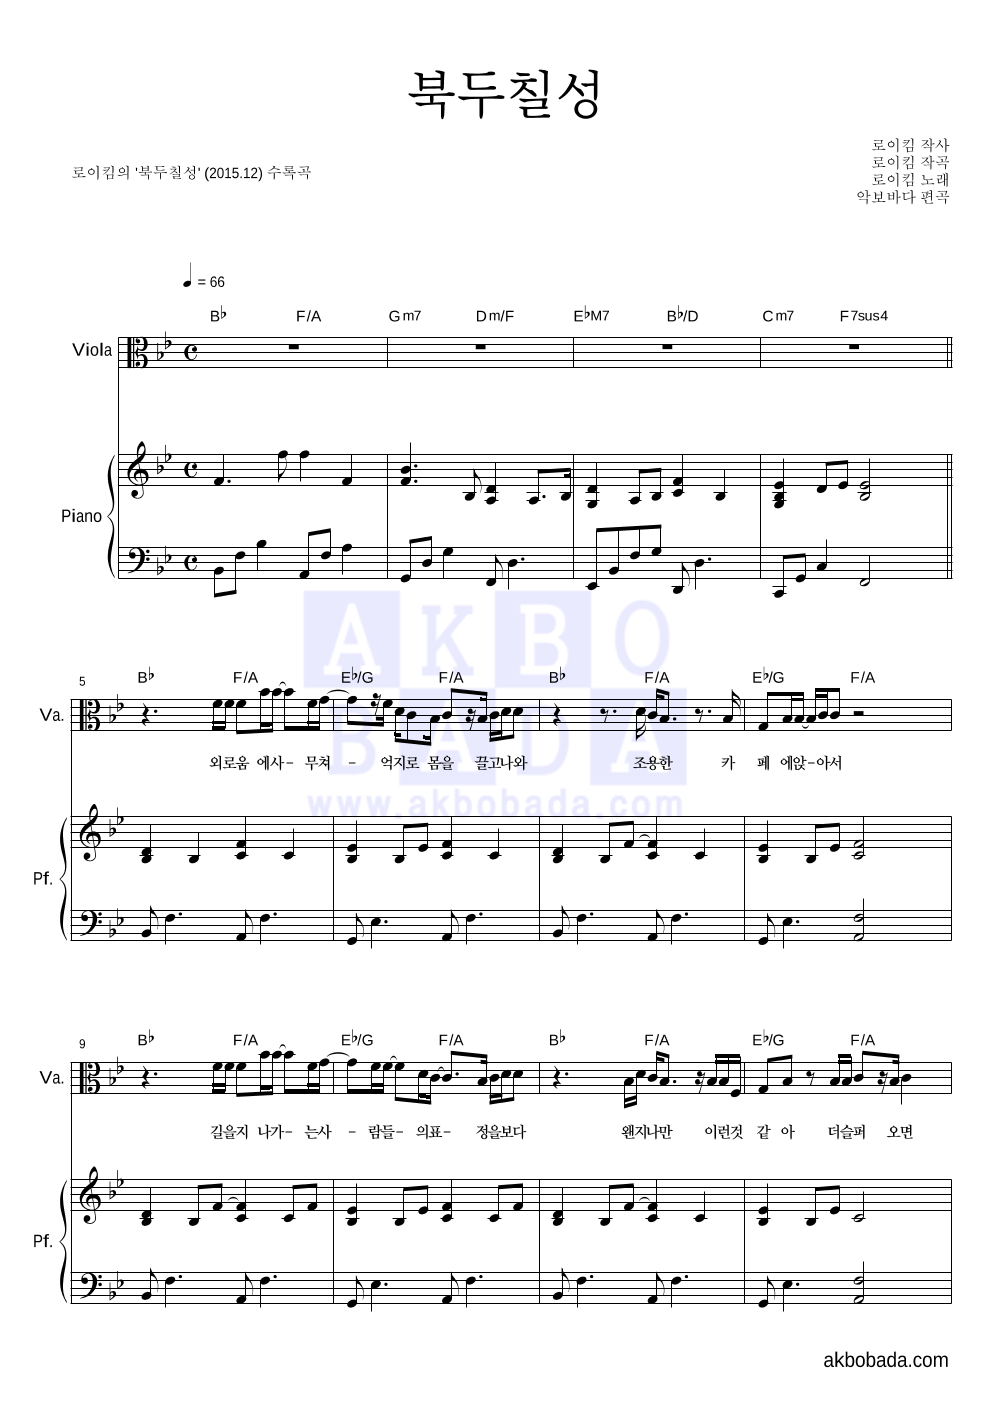 로이킴 - 북두칠성 비올라&피아노 악보 